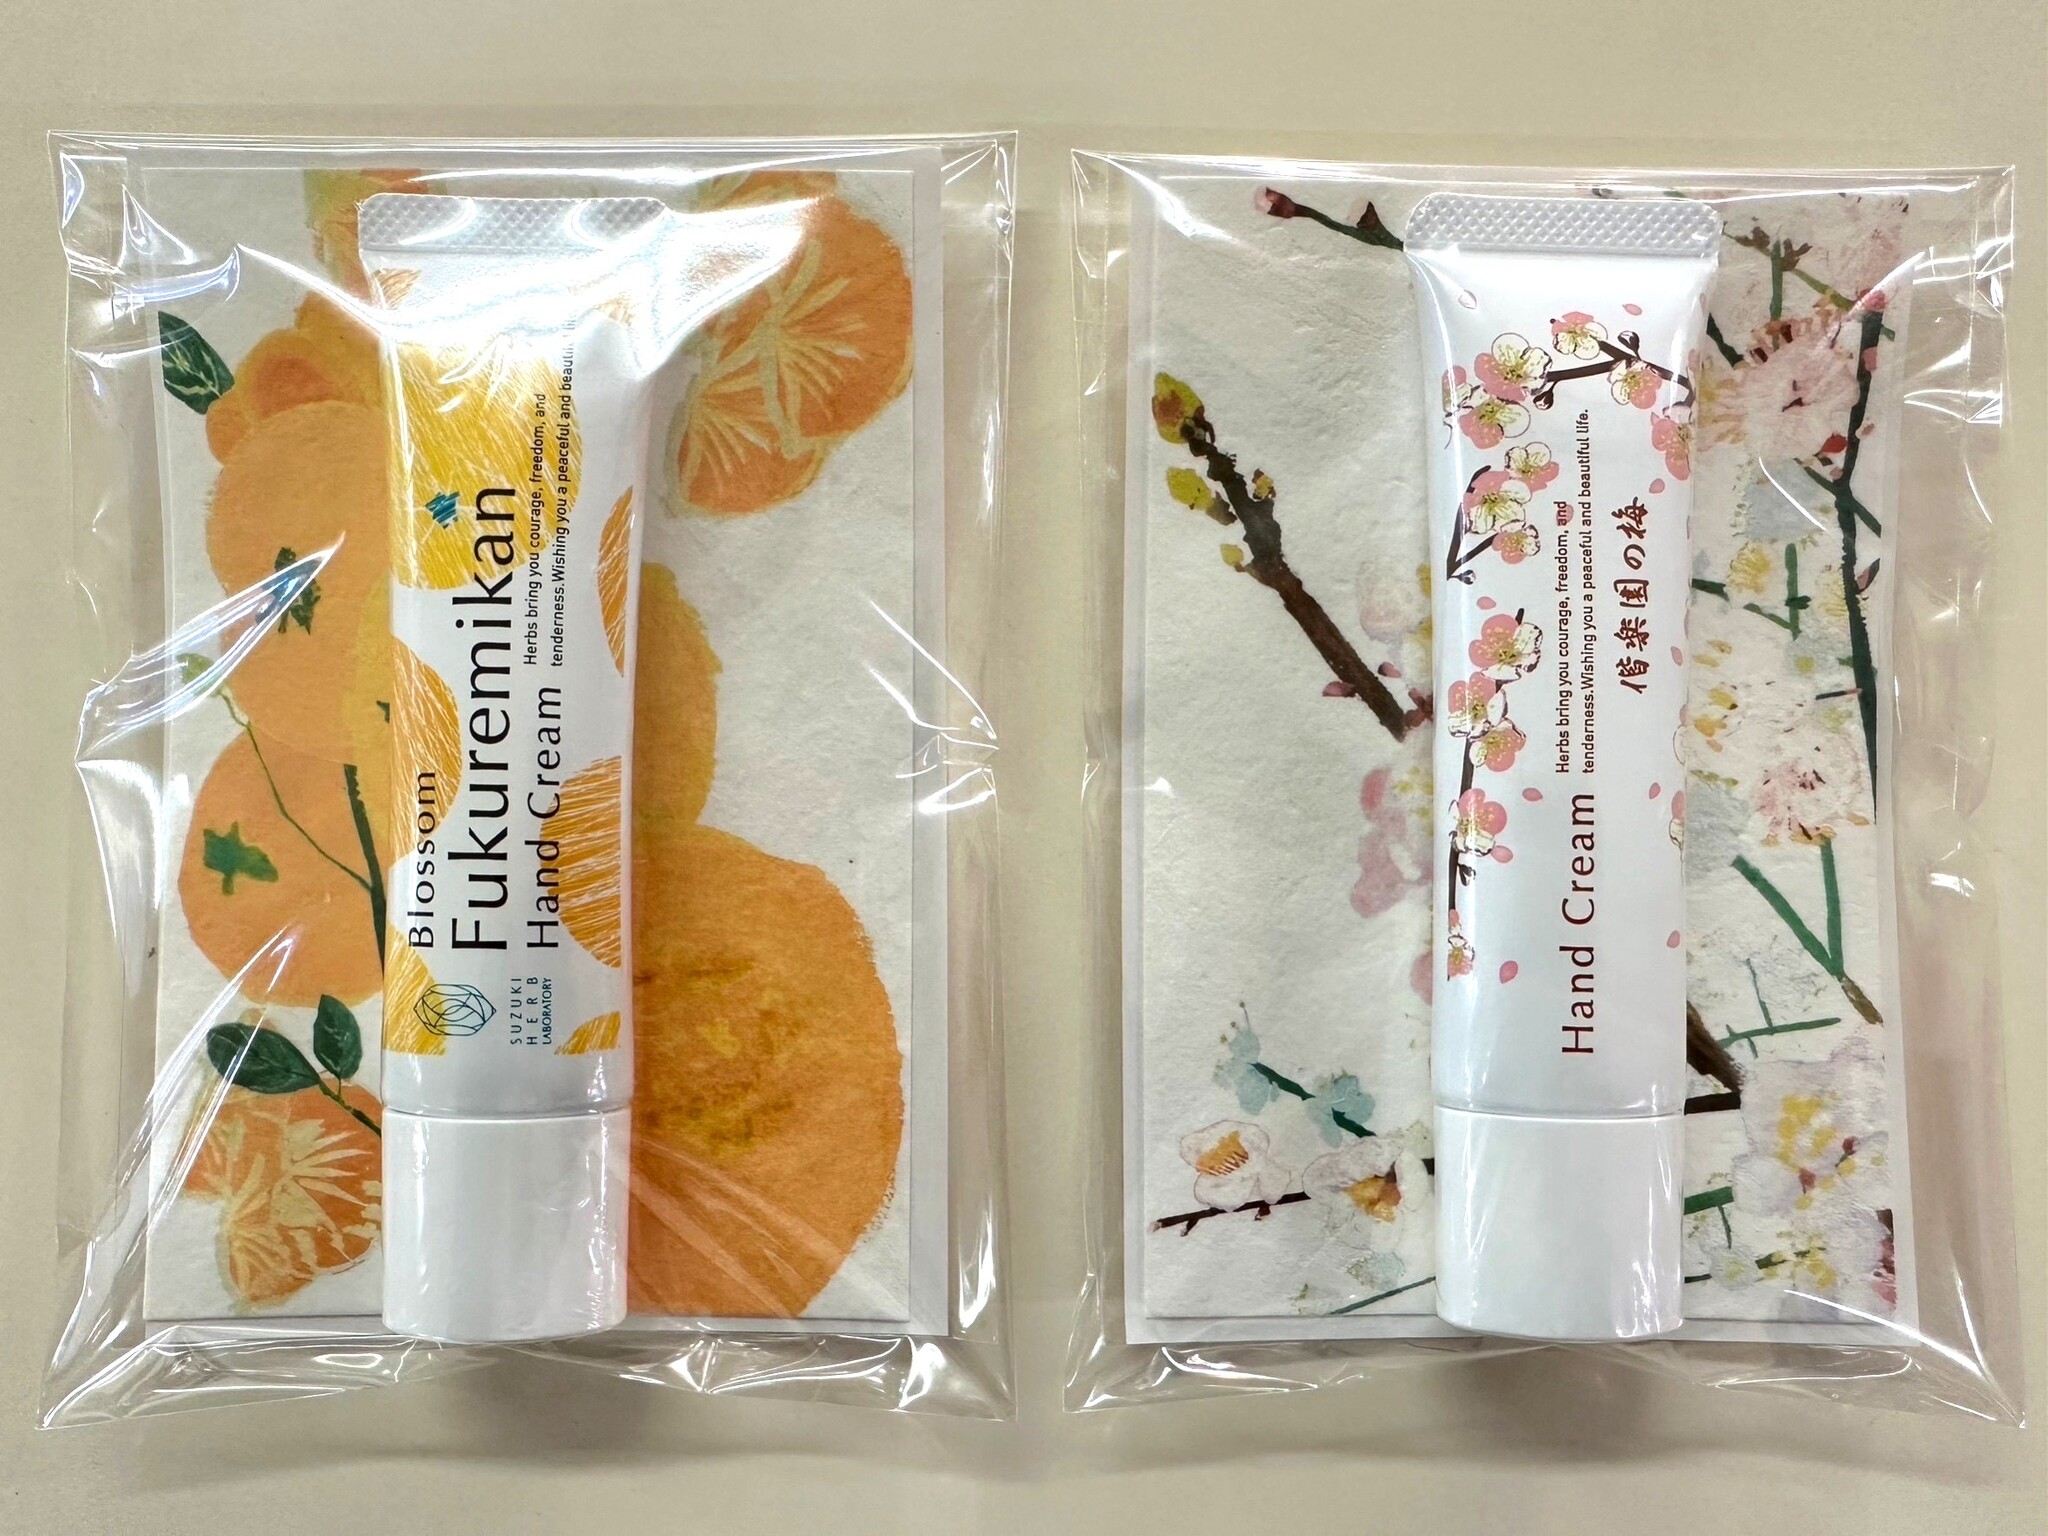 茨城特産品の香りでハンドケア 11 16から茨城県内の郵便局でハンドクリームとエコな絵はがきをセット販売 株式会社 鈴木ハーブ研究所のプレスリリース